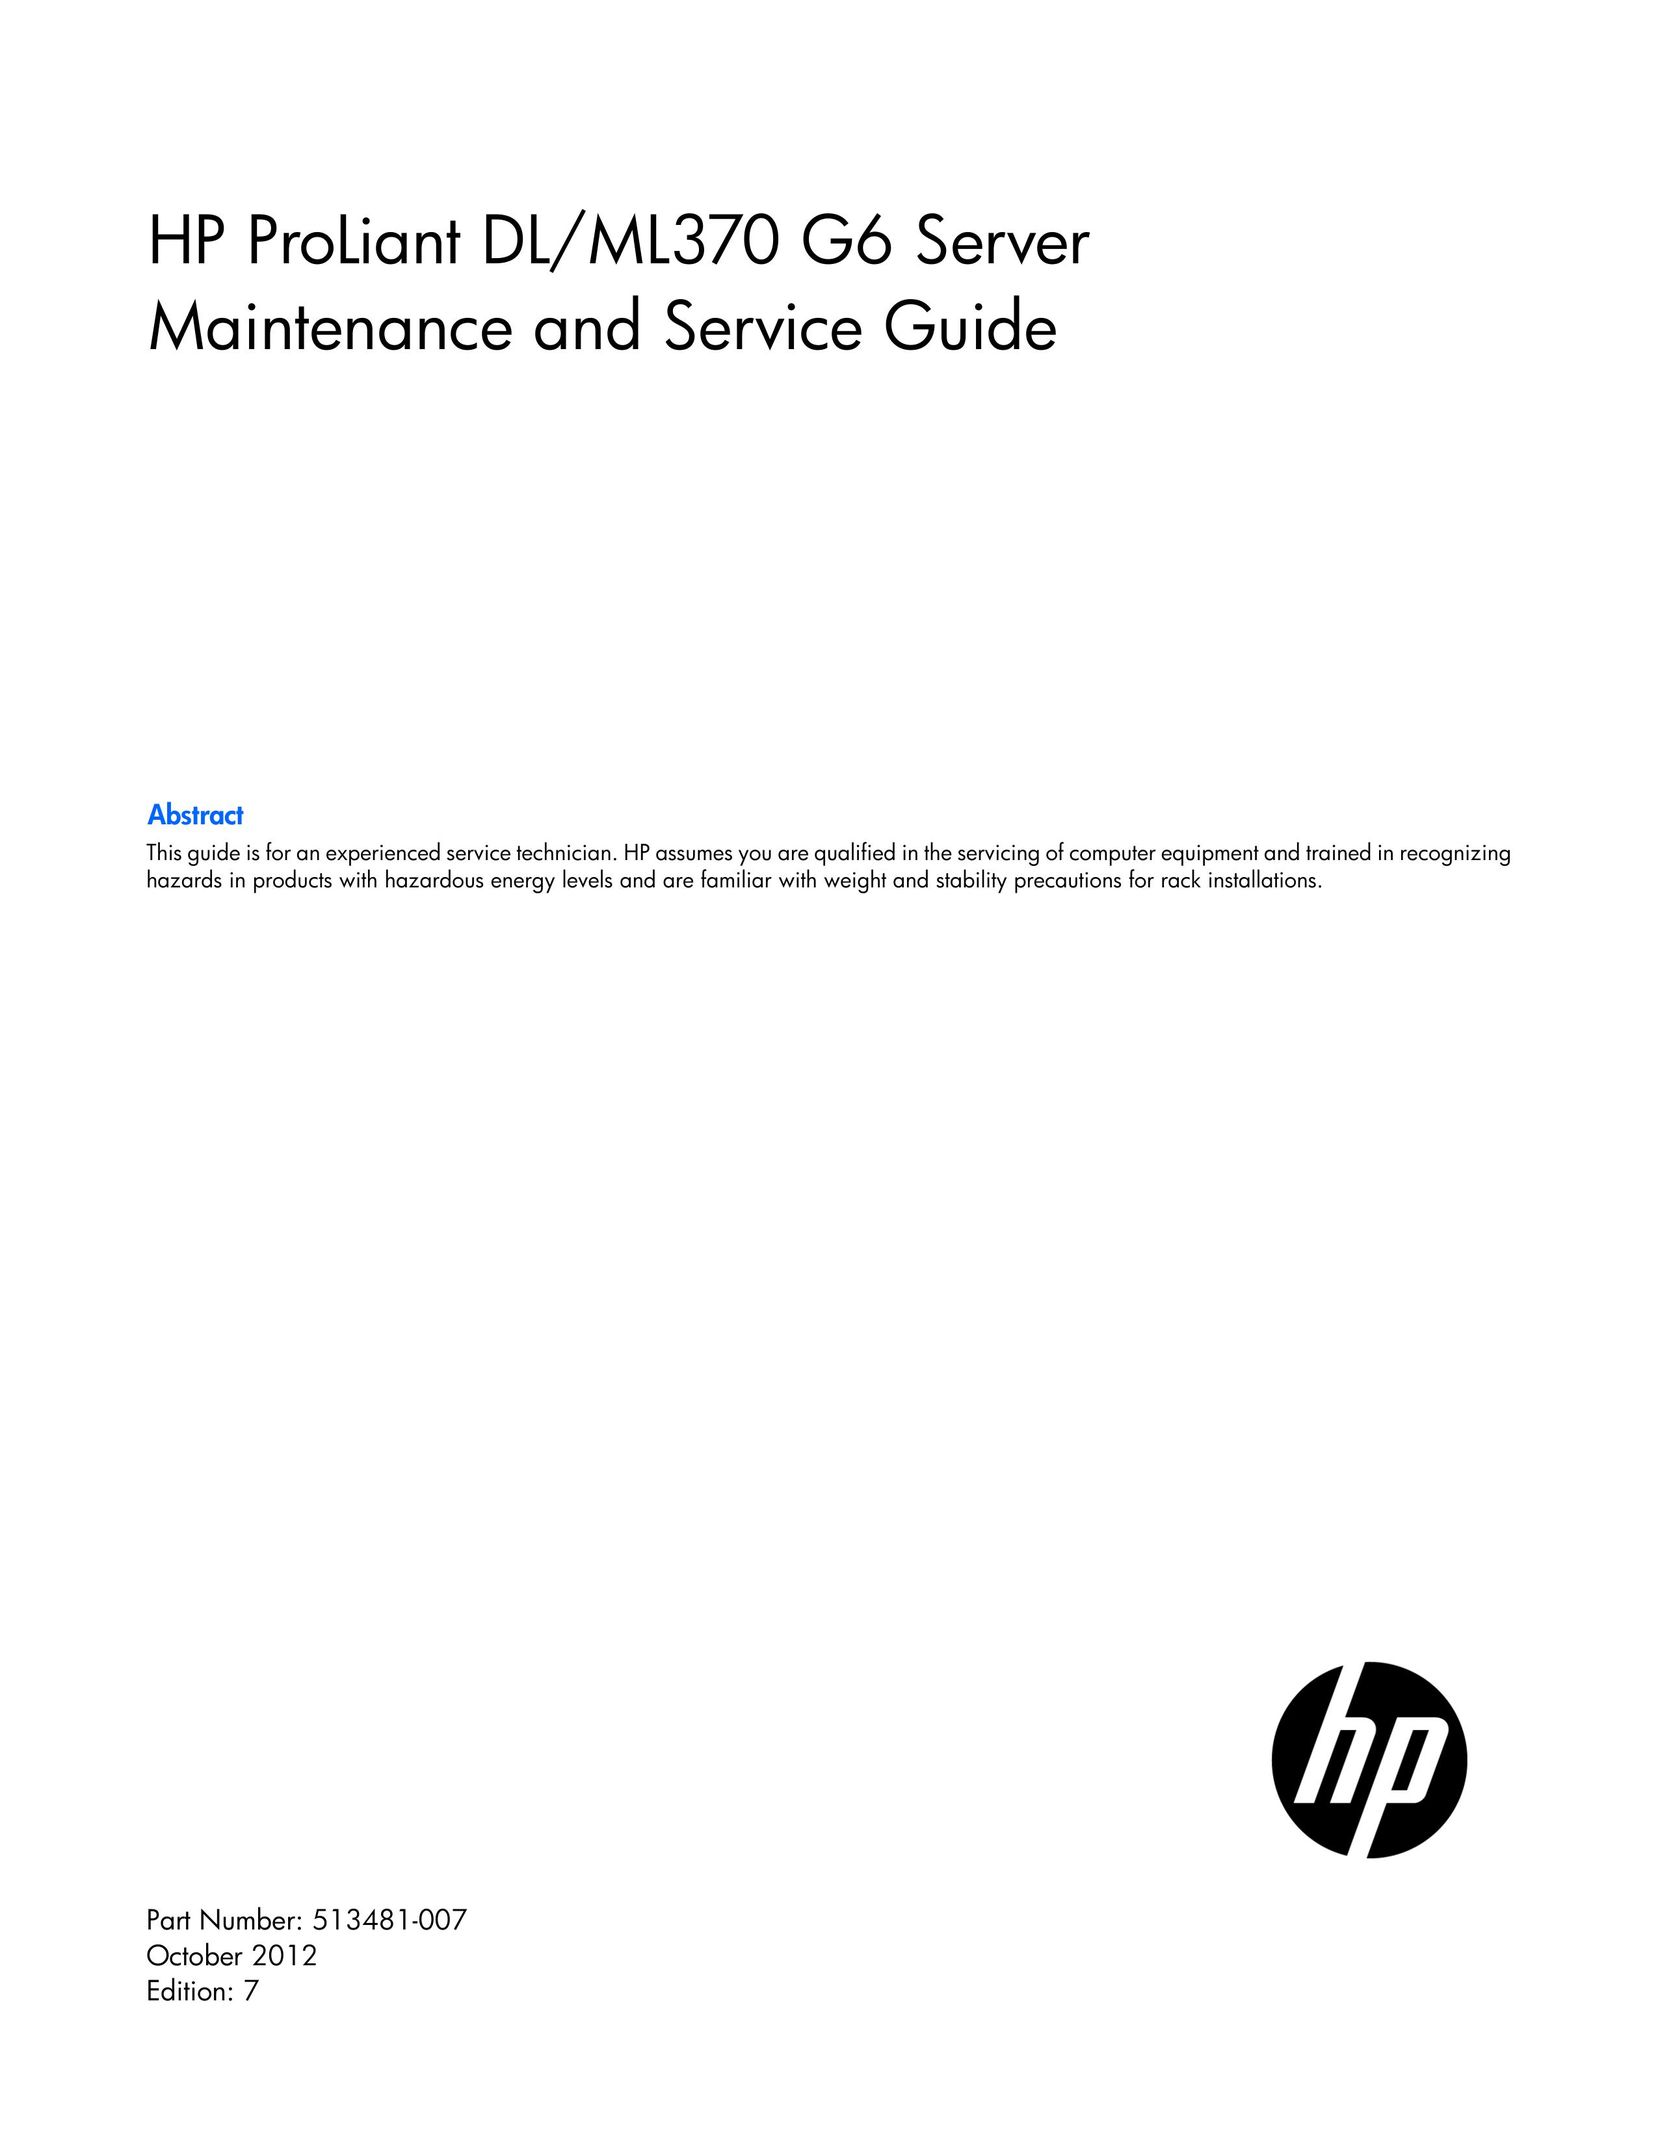 HP (Hewlett-Packard) 654080-S01 Server User Manual